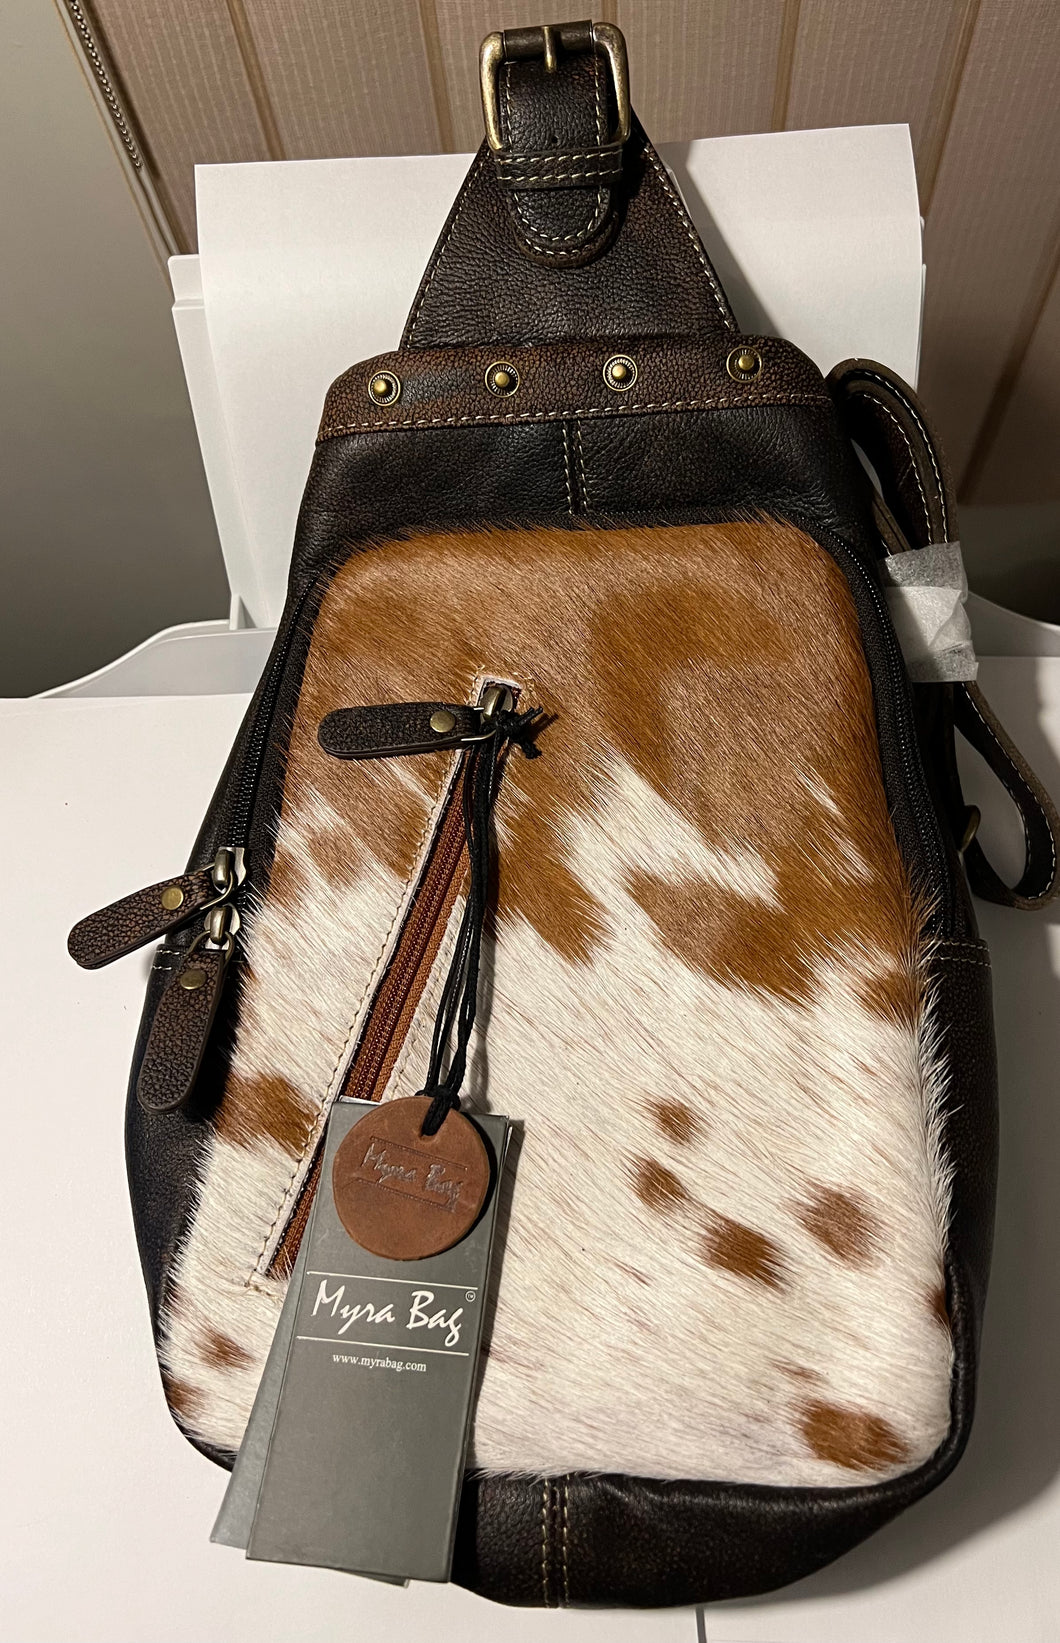 Myra Bag Santa Mesa Fanny-Pack Bag sling bag S-8719